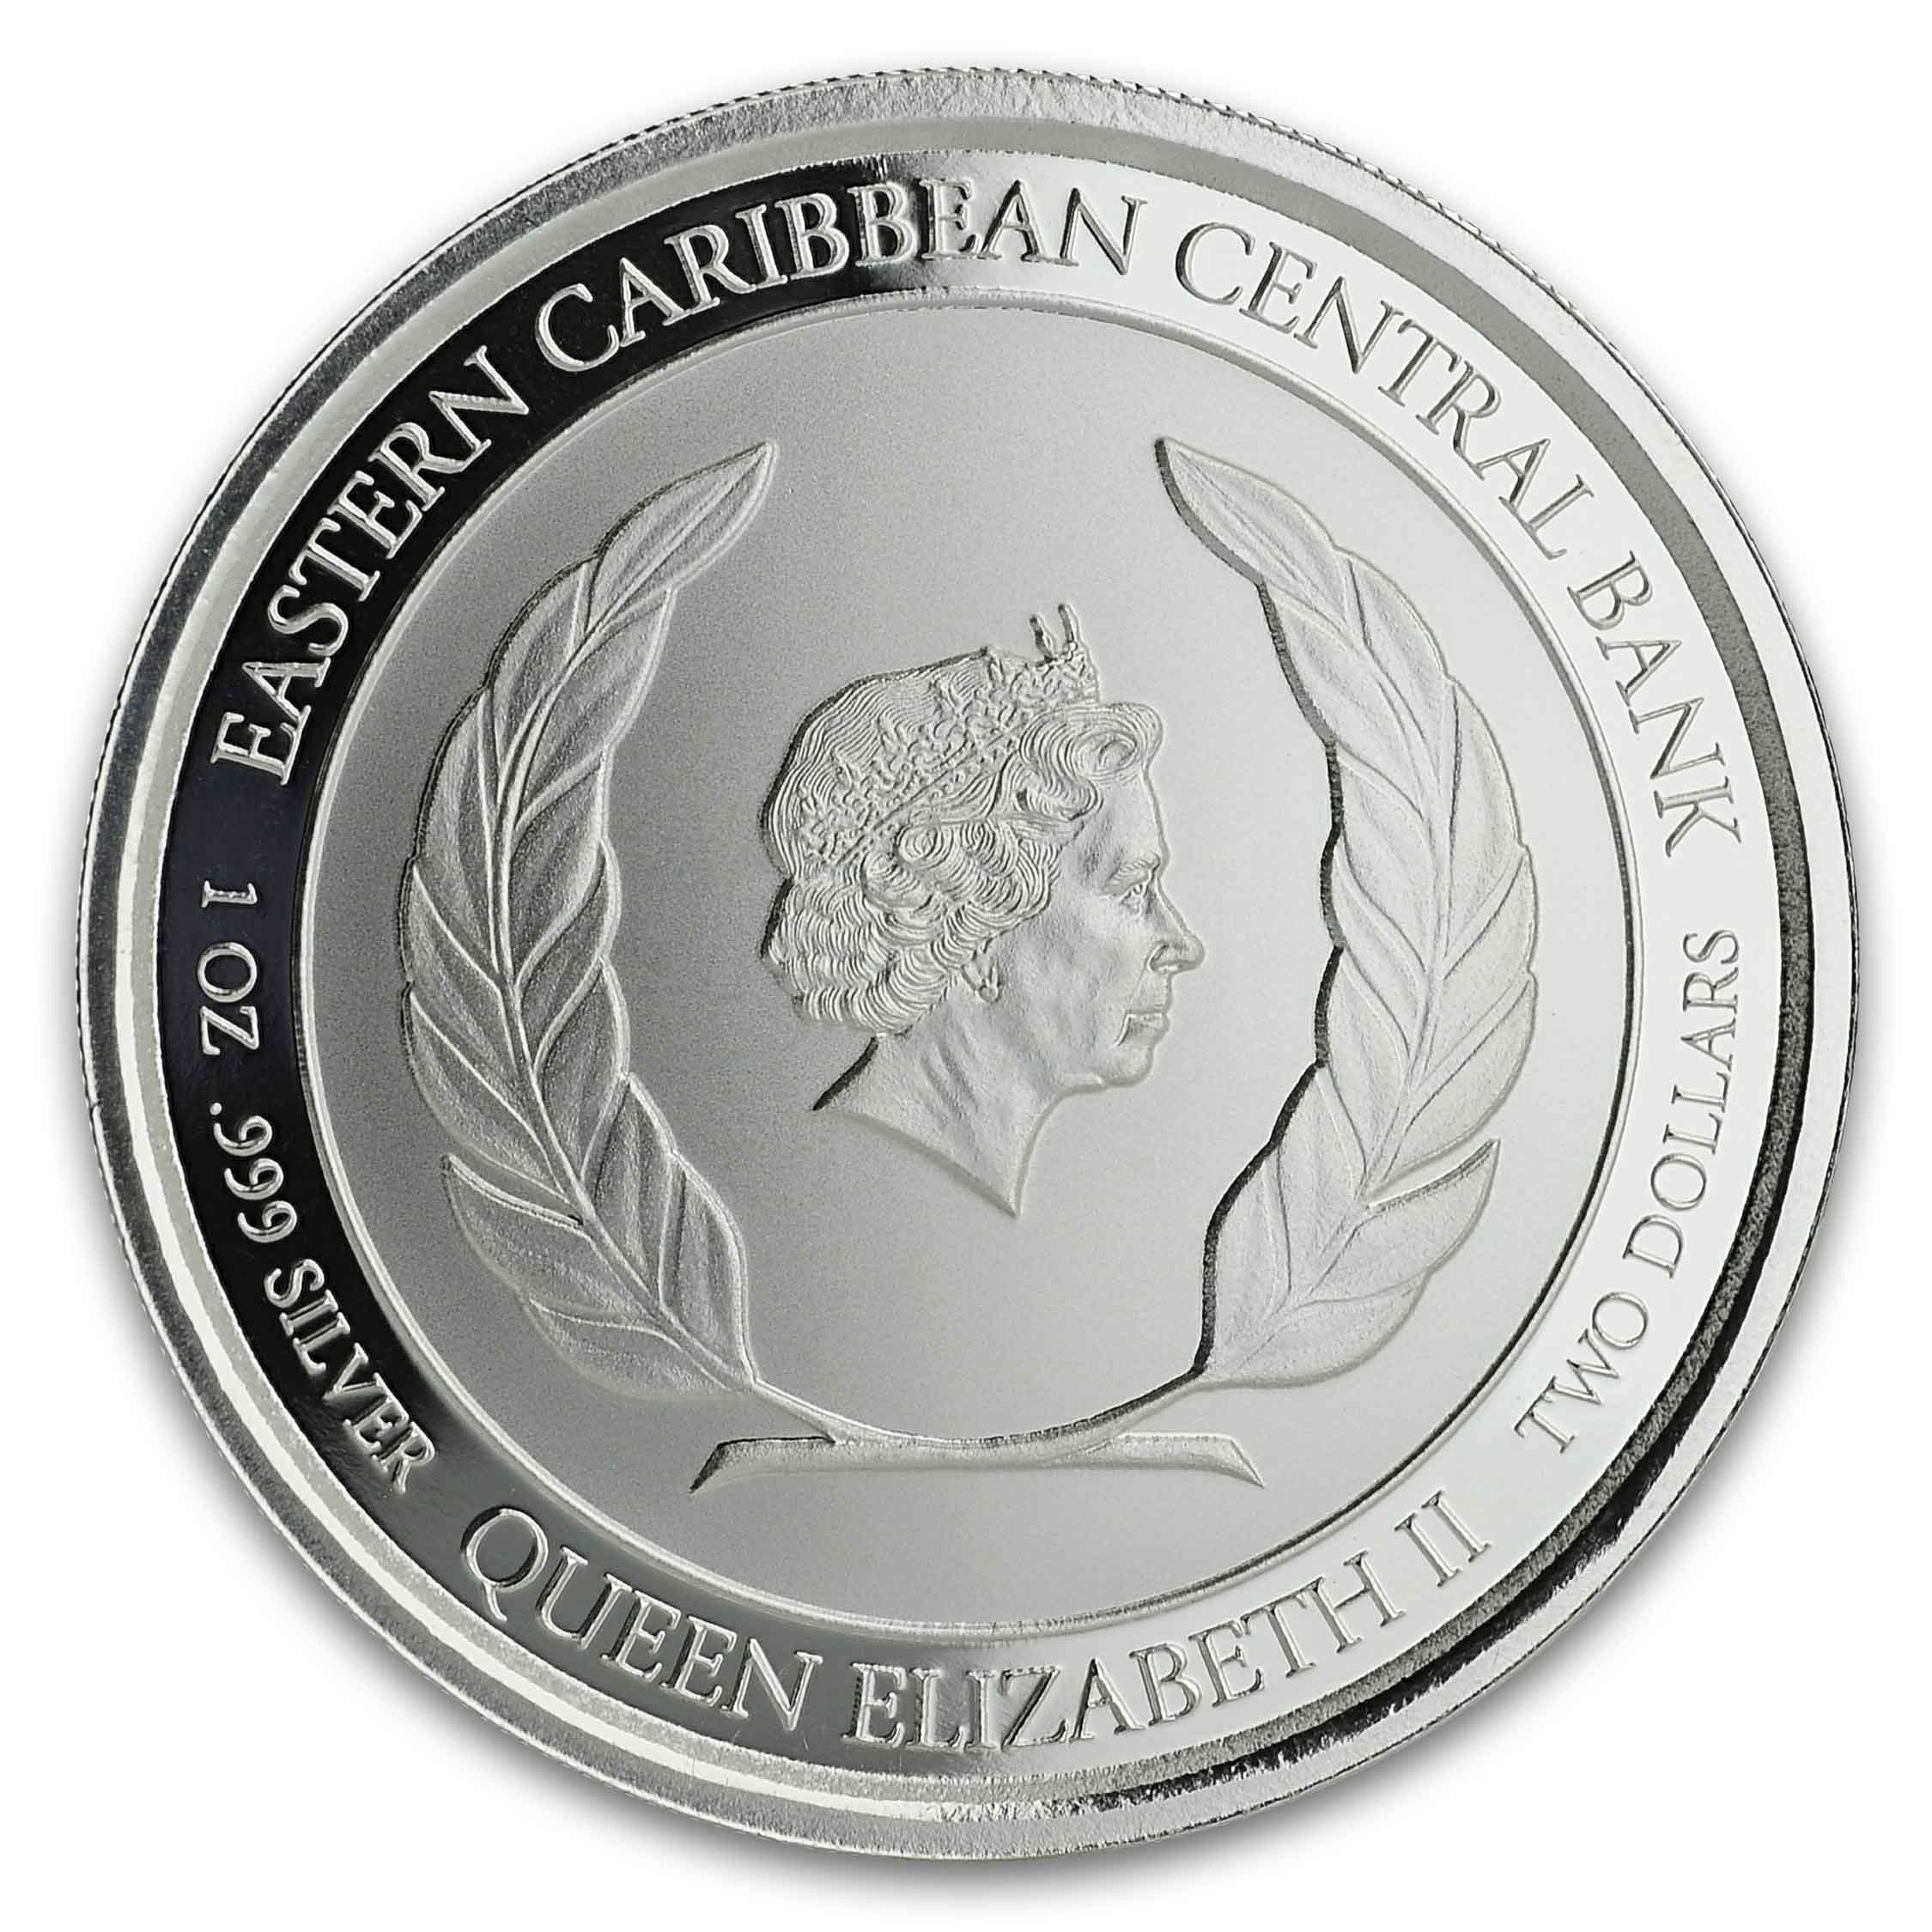 2016 Congo Silverback Gorilla 1 Oz Silver Coin